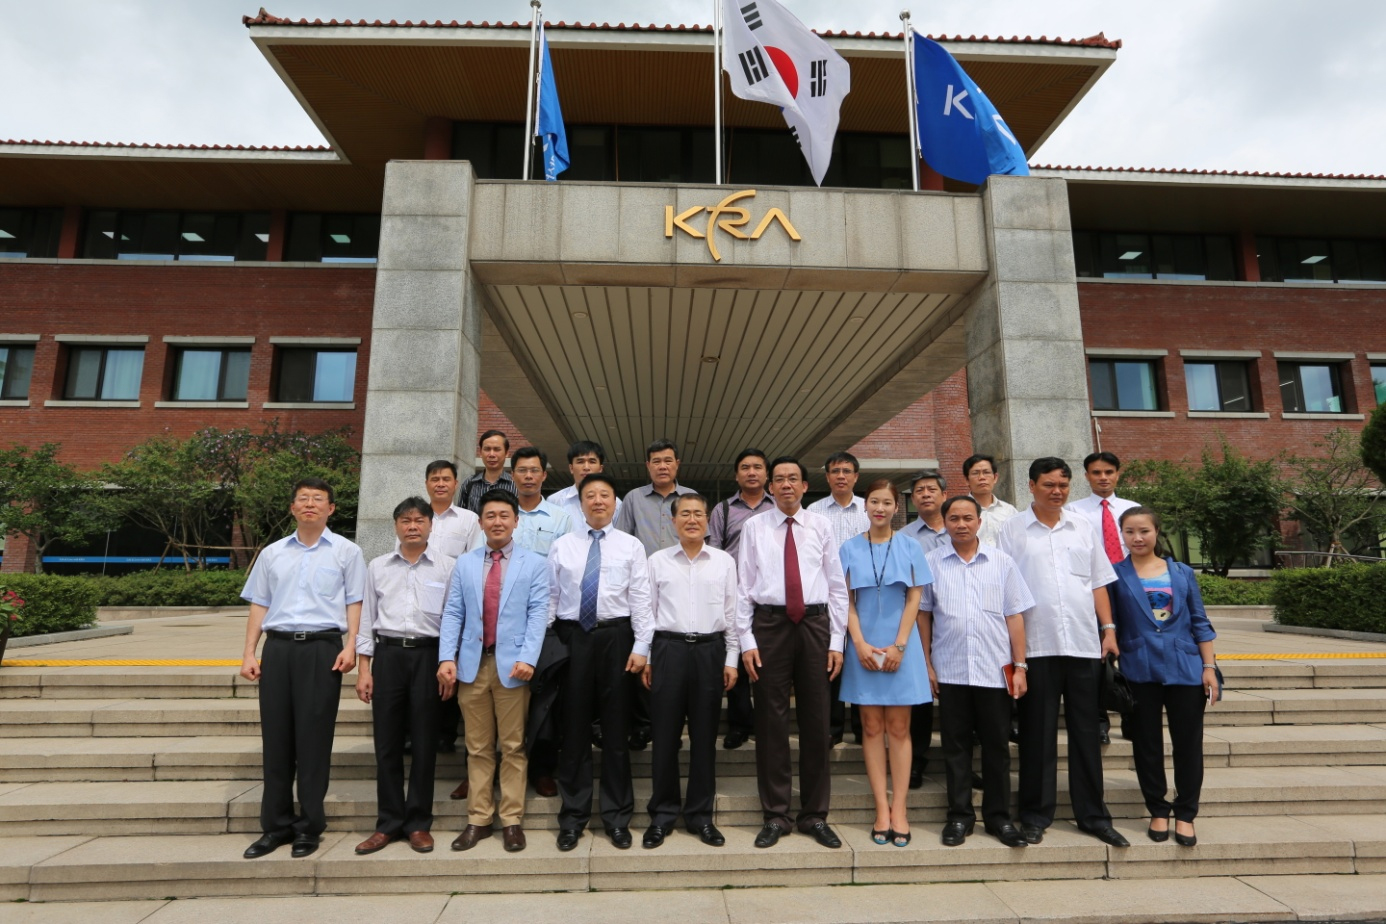 2013年７月１９日、ヴィンプック省団は韓国での投資促進活動を続けた